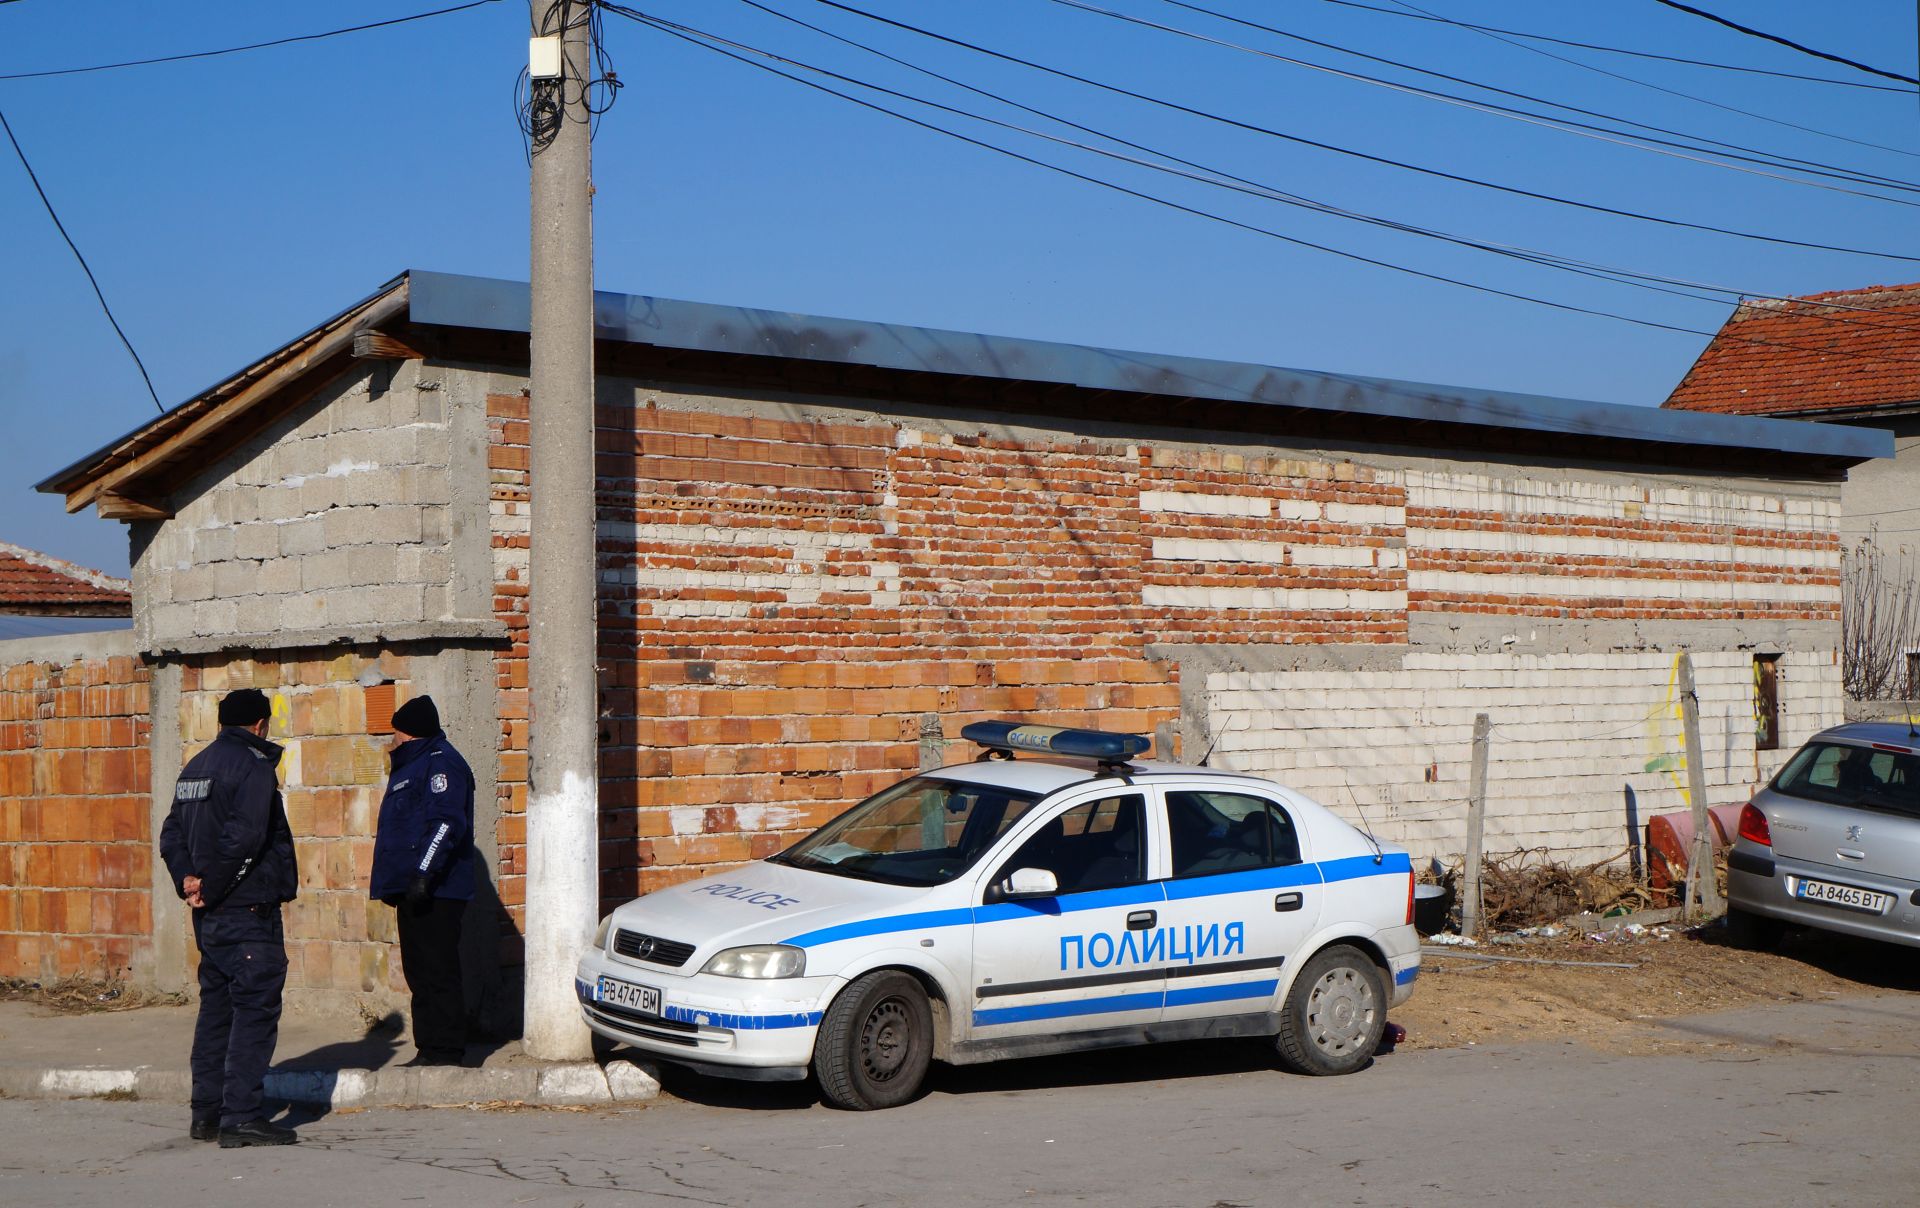 Във Войводиново в момента има постоянно полицейско присъствие